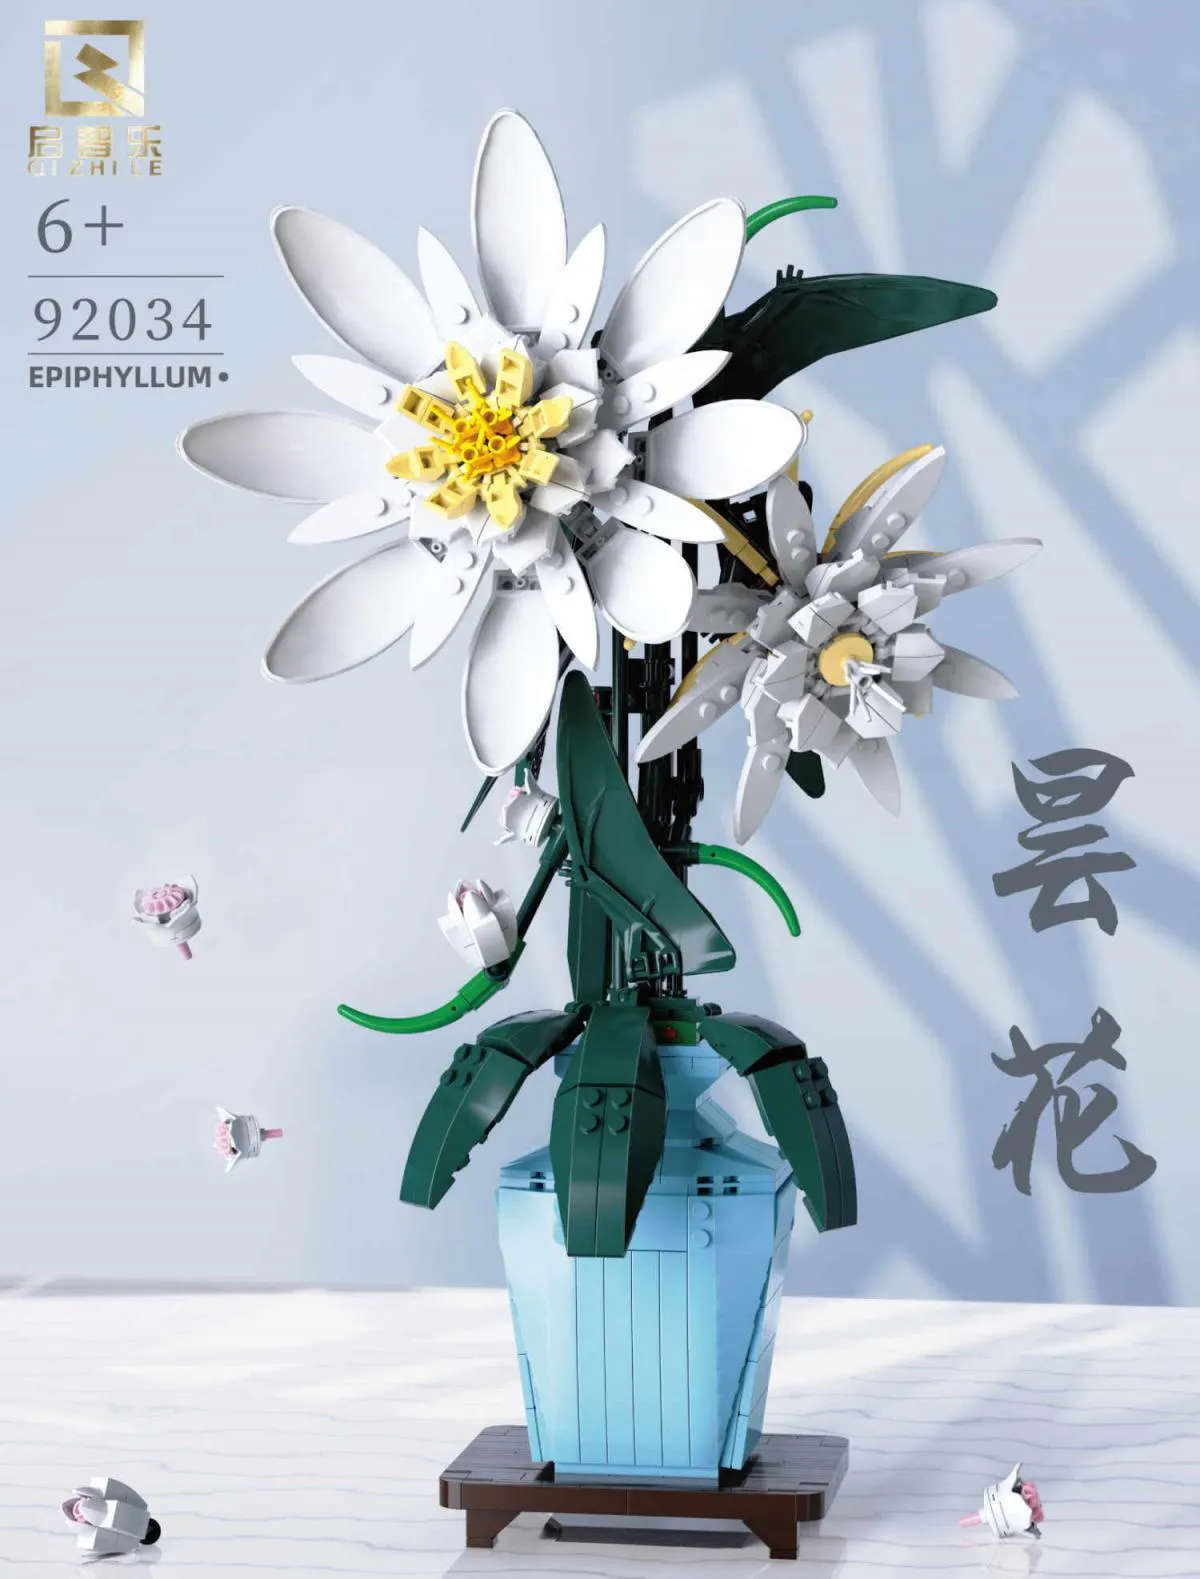 Qi Zhi Le - Epiphyllum | Set 92034